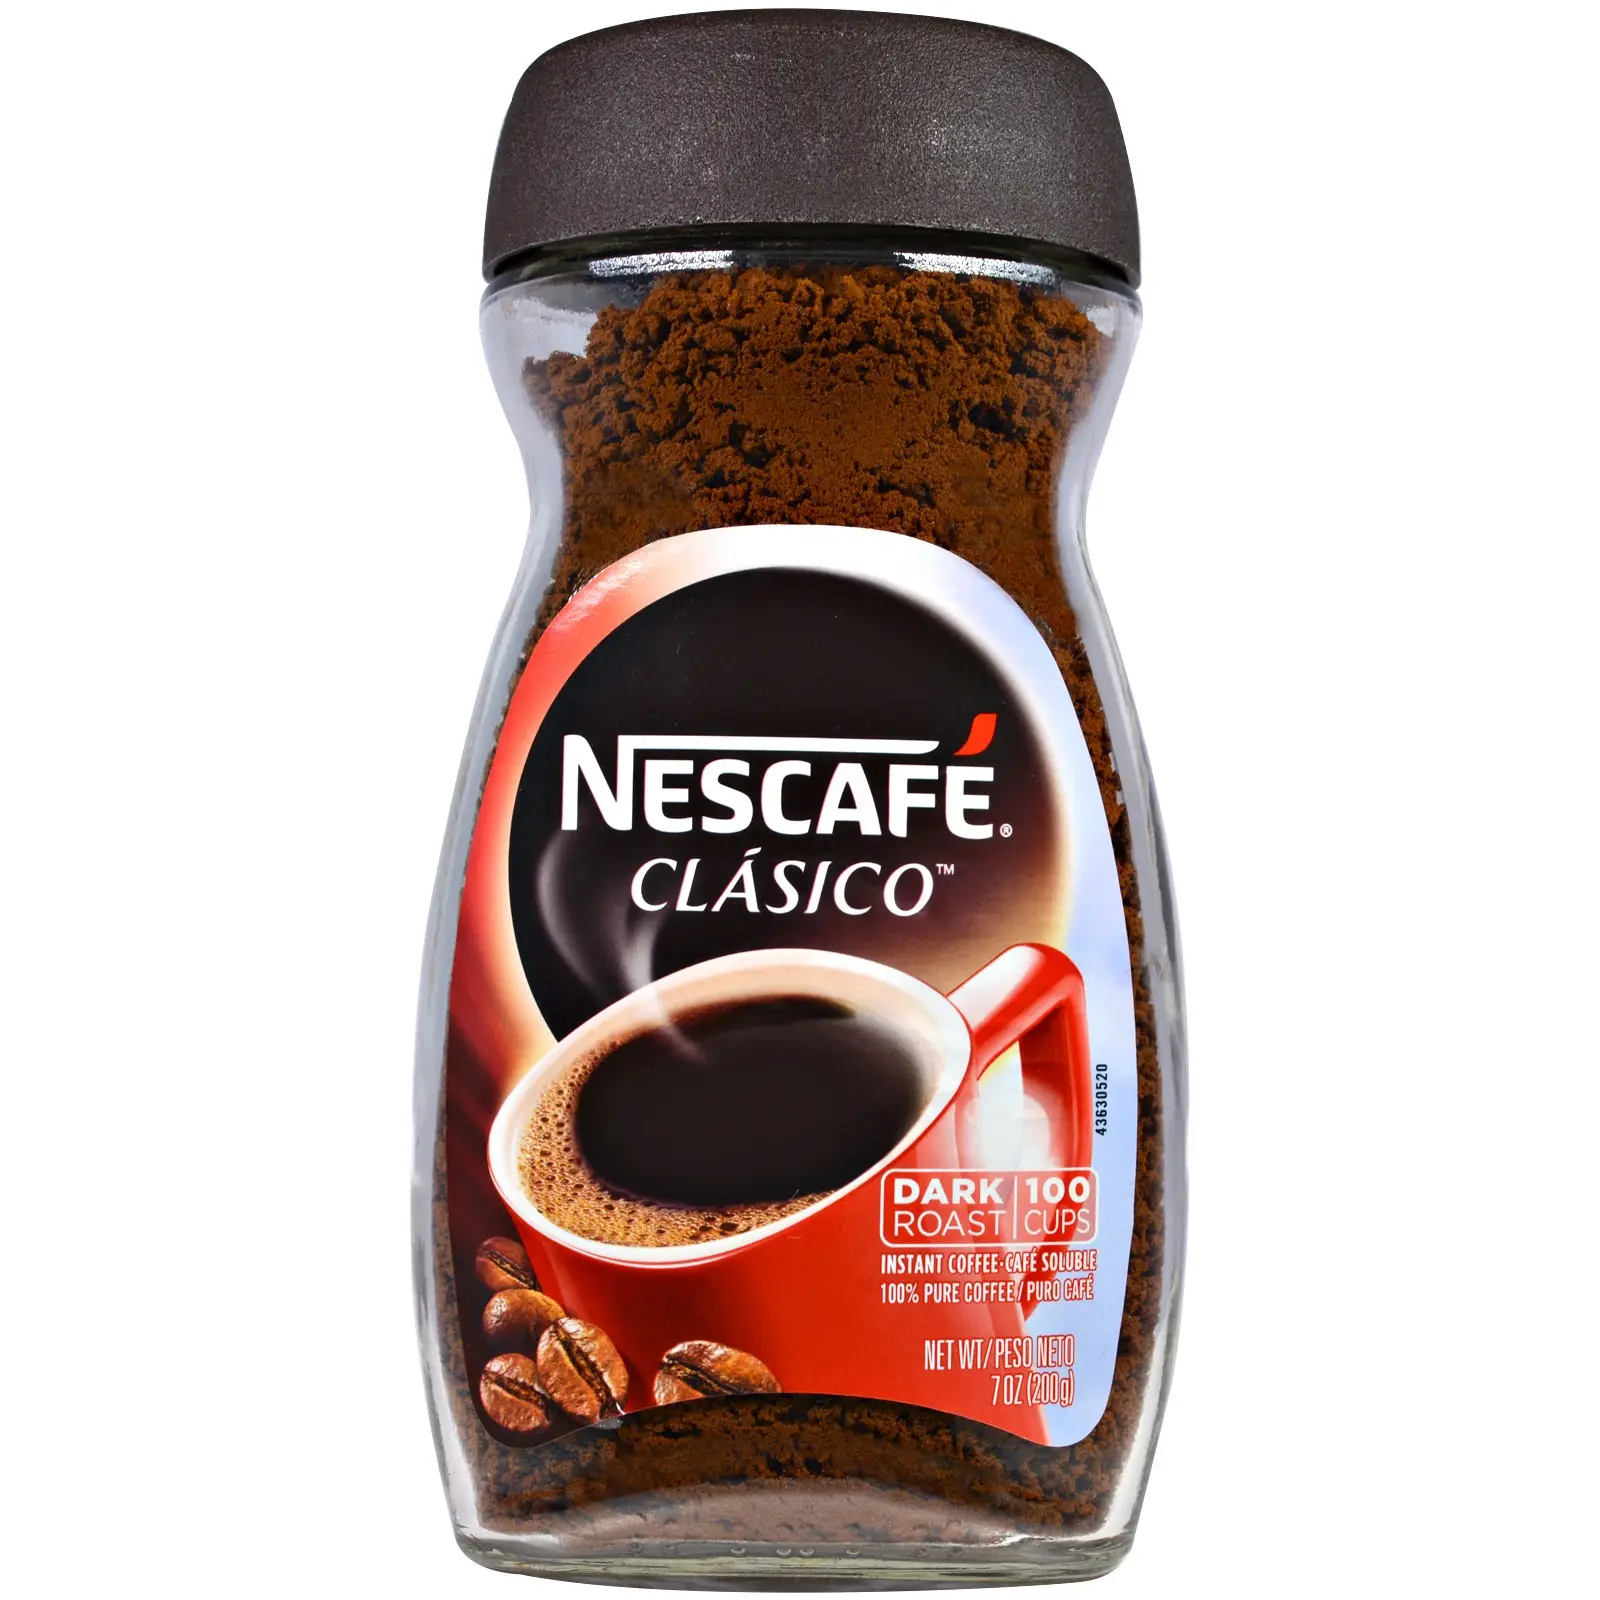 Кофе растворимый лучший по качеству. Кофе Nescafe Gold 200 г. Кофе растворимый Taster's choice Original. Нескафе Блэк Роаст 85г. Nescafe Classic Dark Roast.